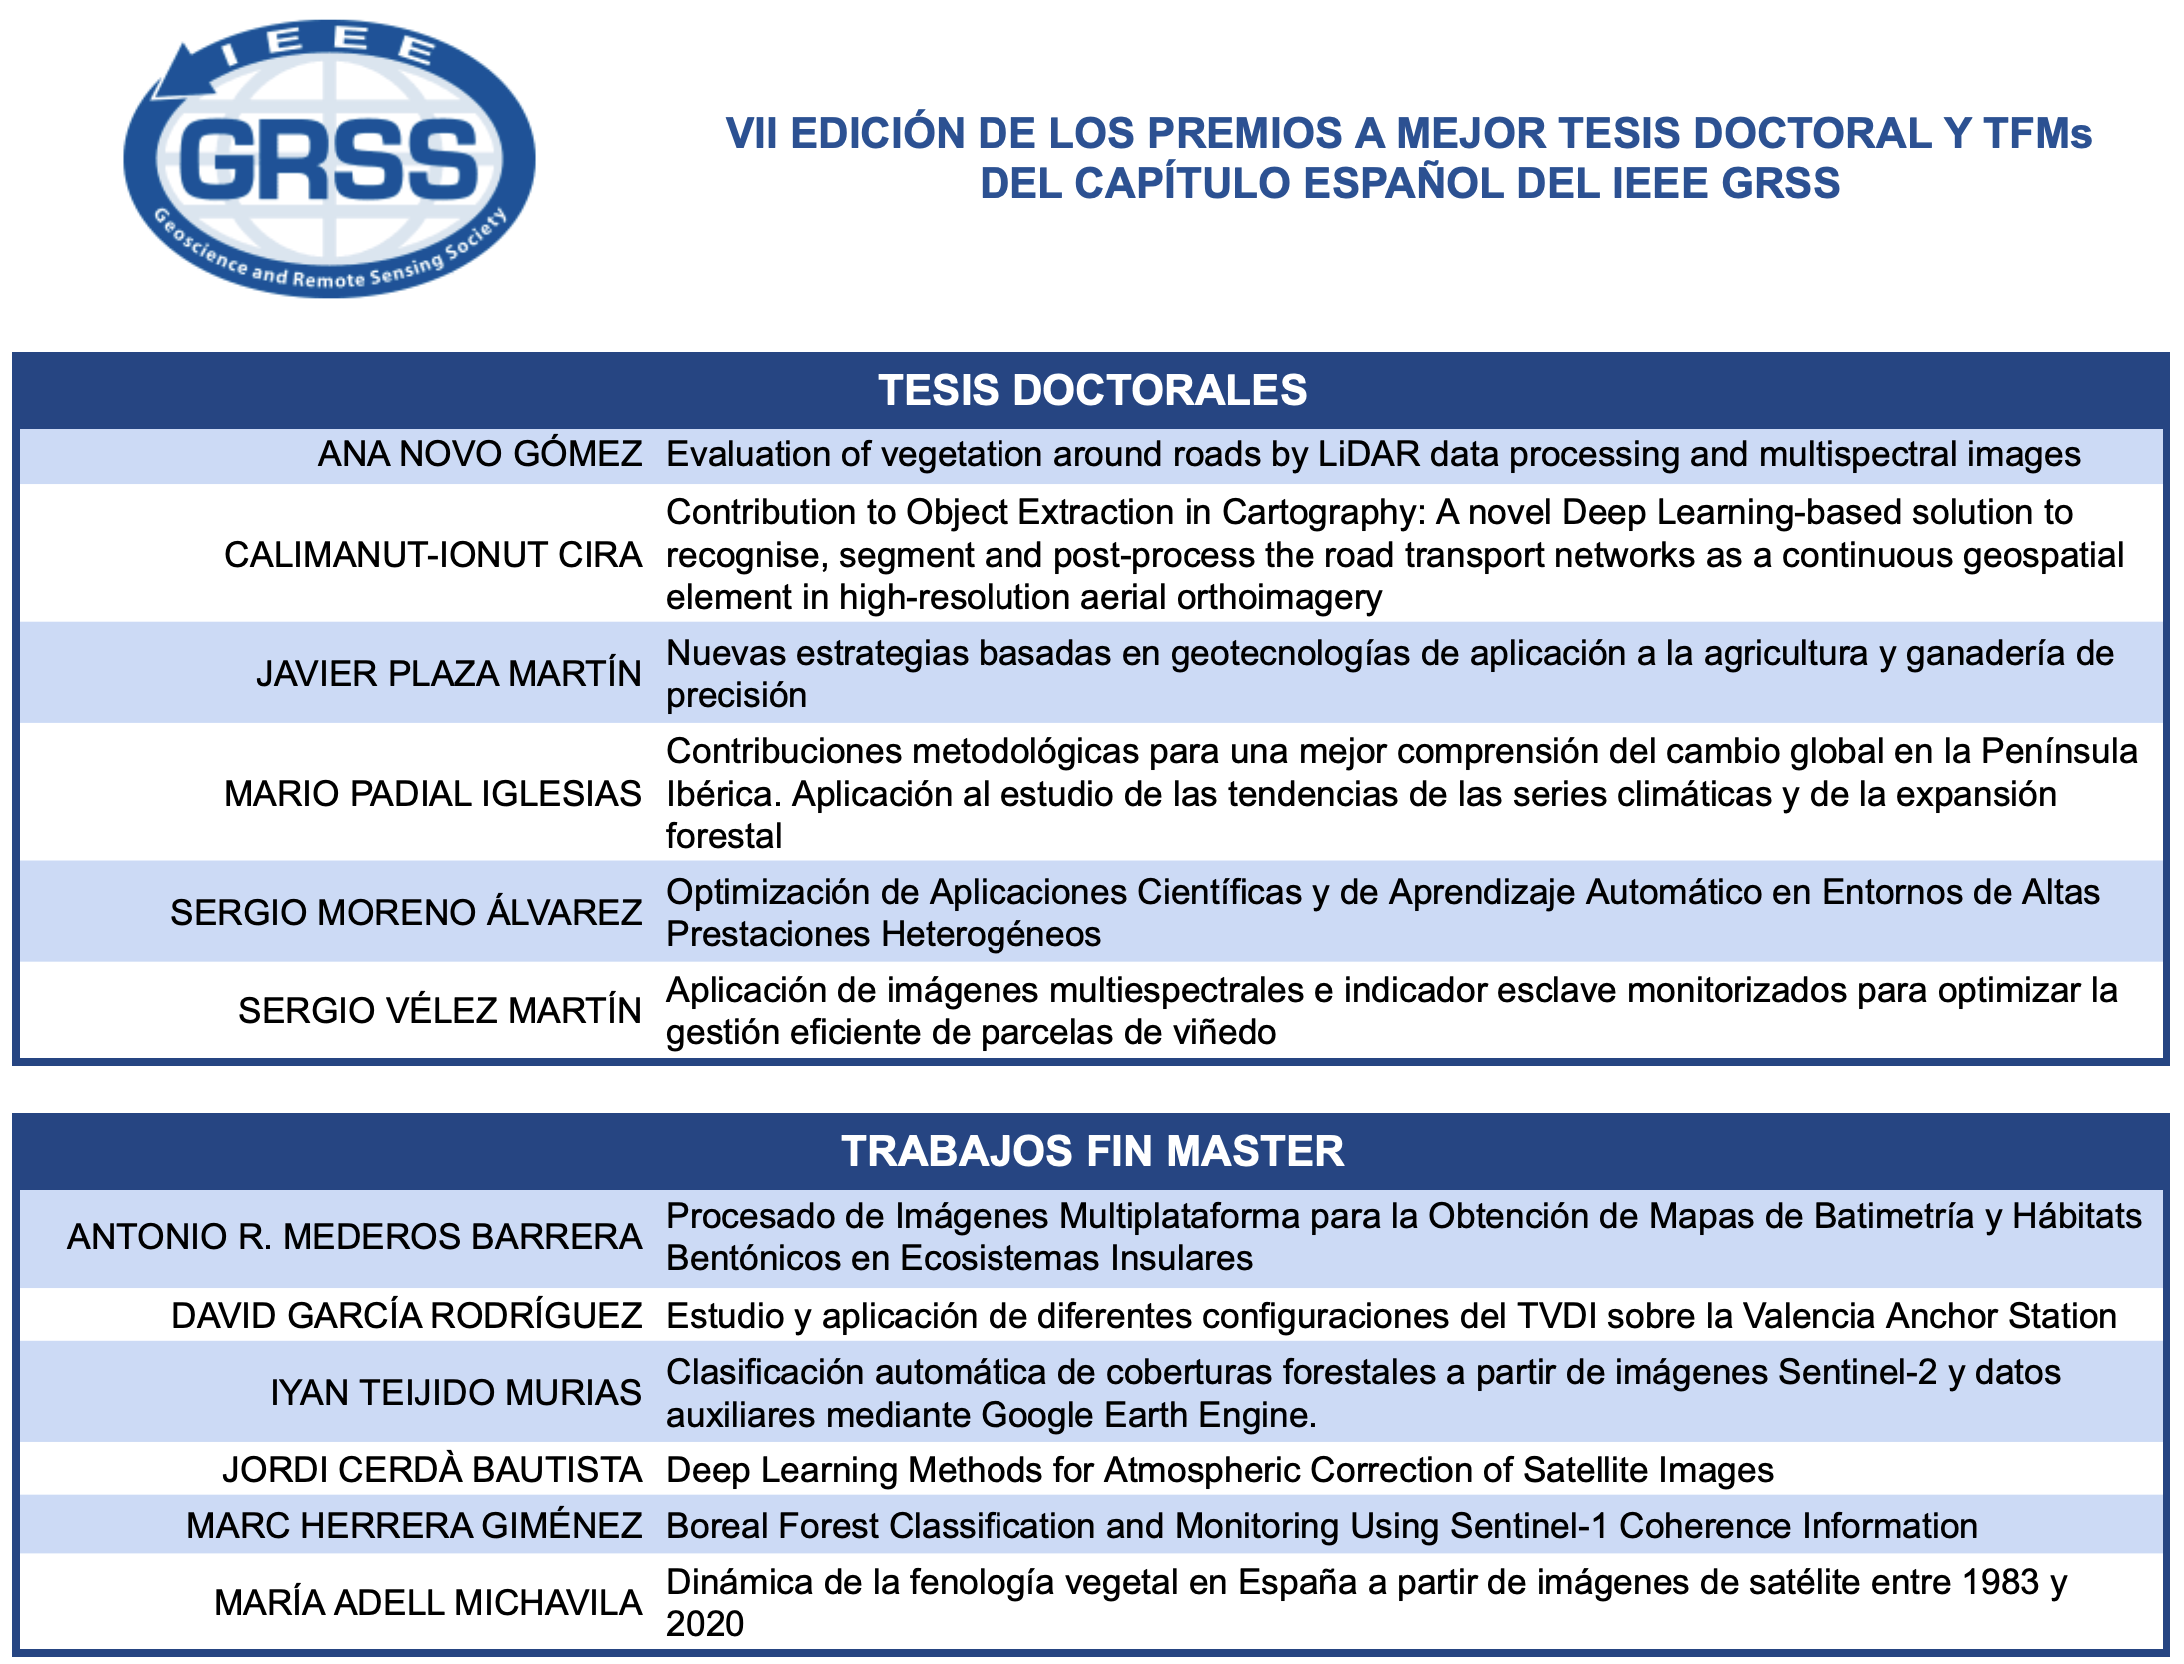 Tabla de trabajos presentados en la VII edición de los premios a mejor tesis y TFMs de teledetección, del Capítulo Español del IEEE GRSS